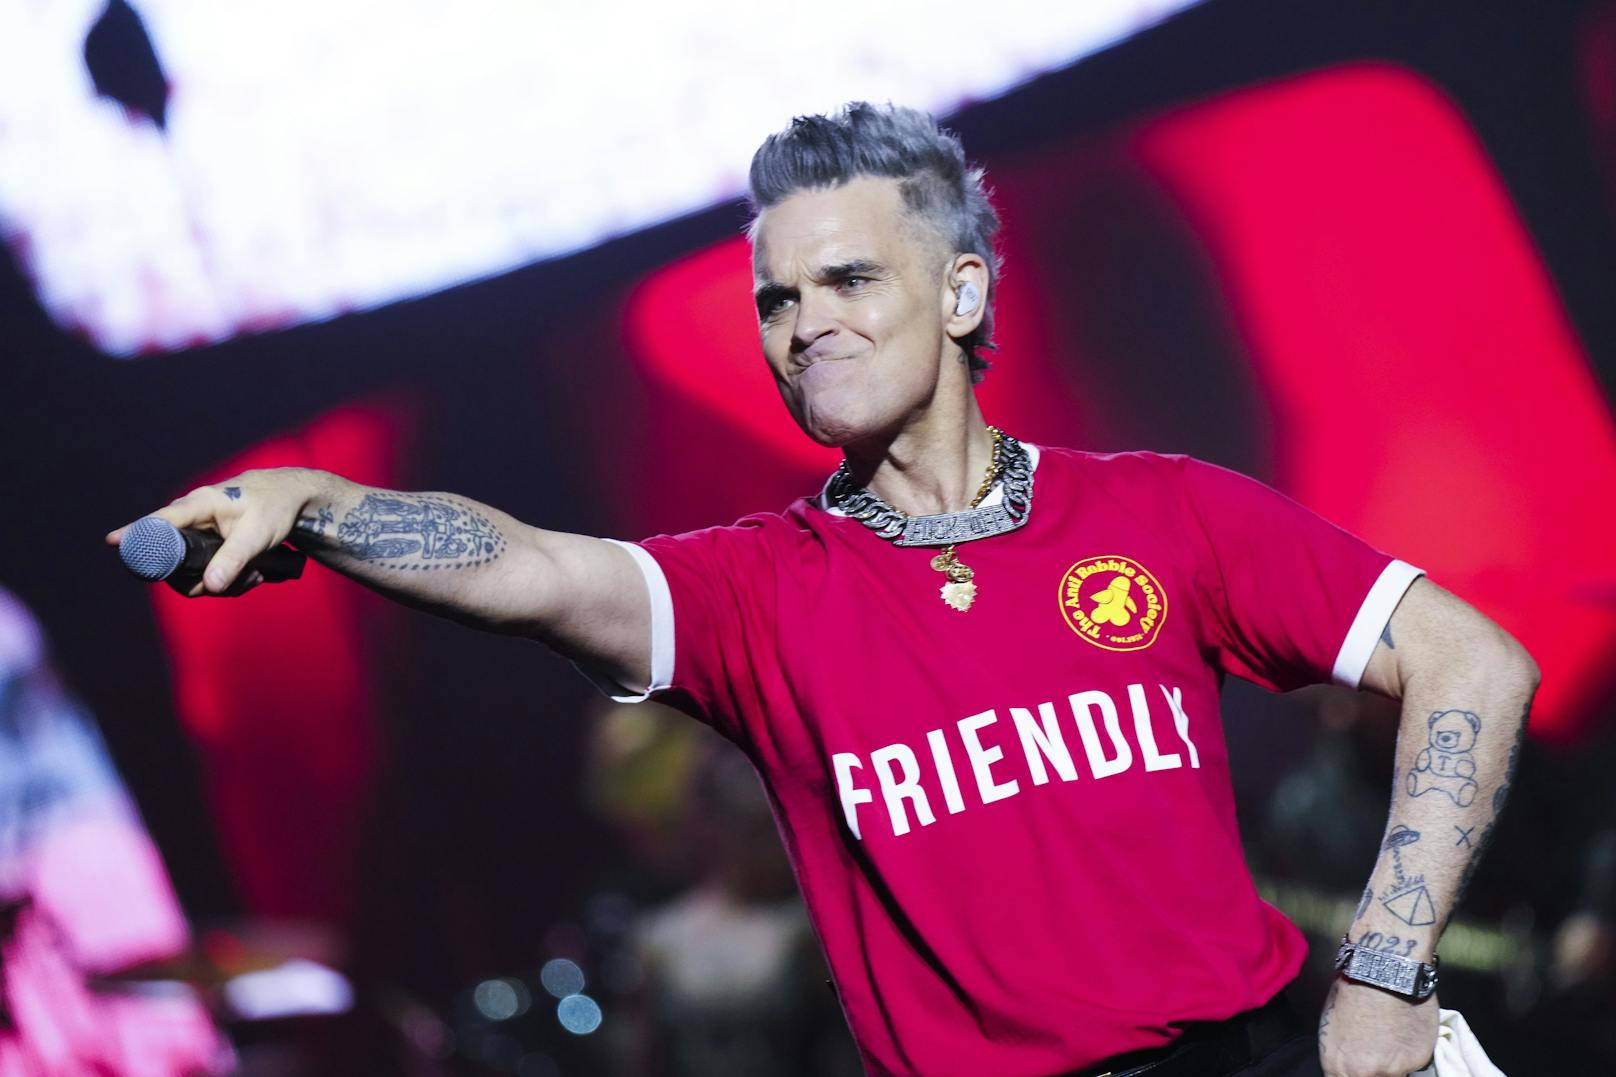 Popstar Robbie Williams in der Wiener Stadthalle.